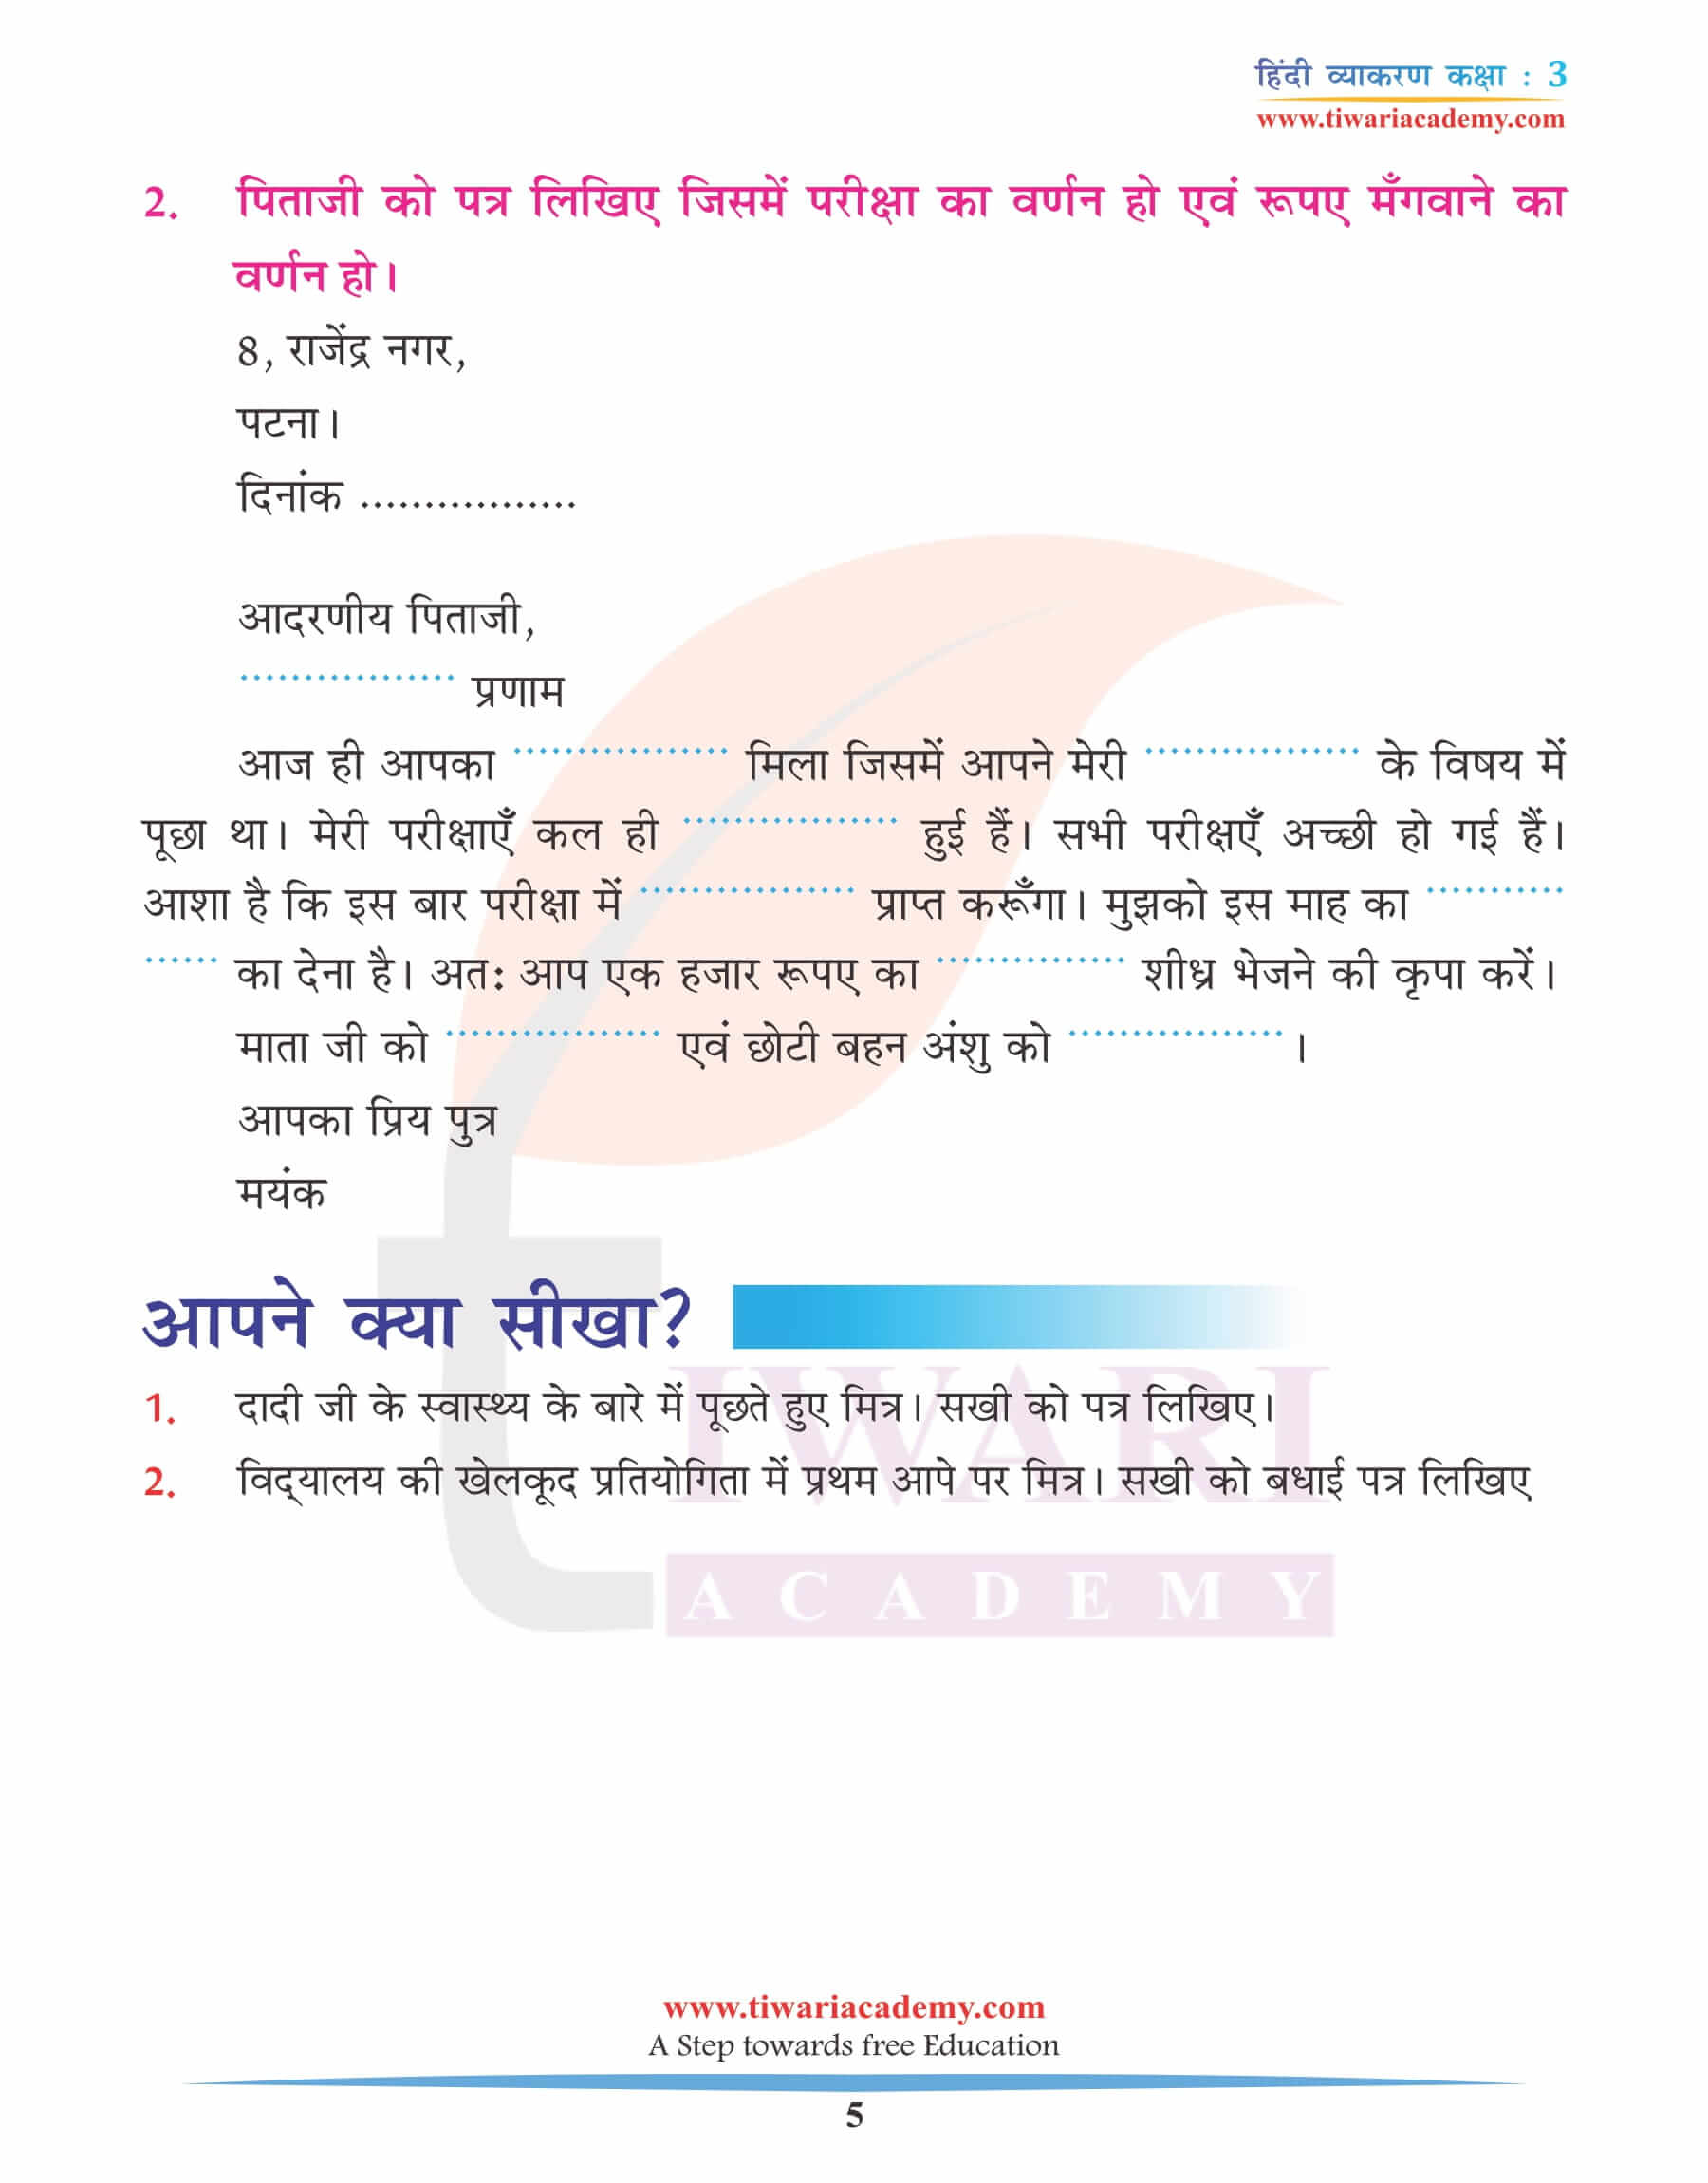 कक्षा 3 हिंदी व्याकरण पाठ 15 पत्र लेखन